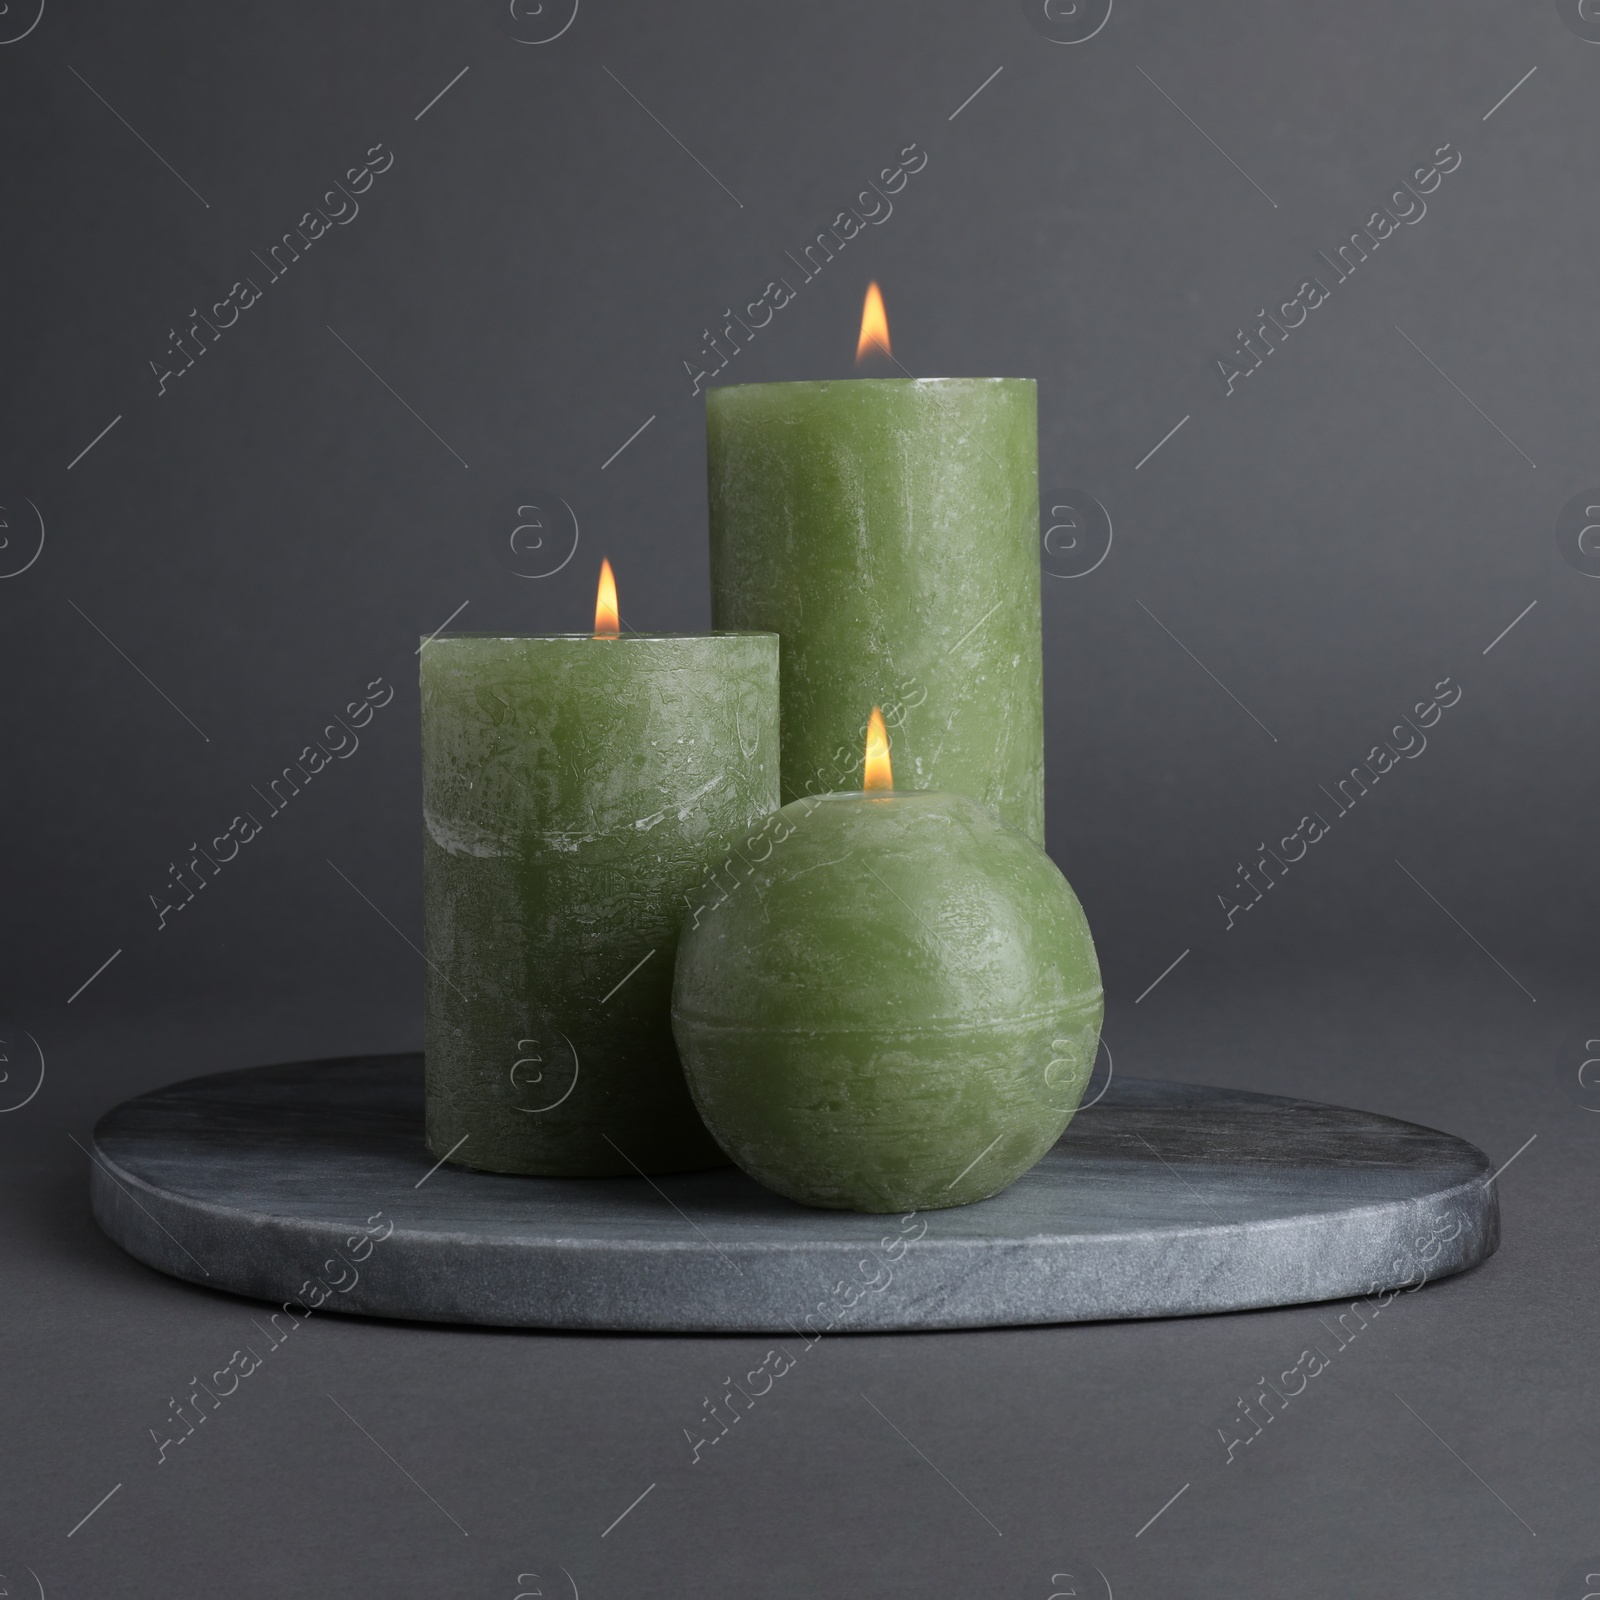 Photo of Set of burning candles on grey background